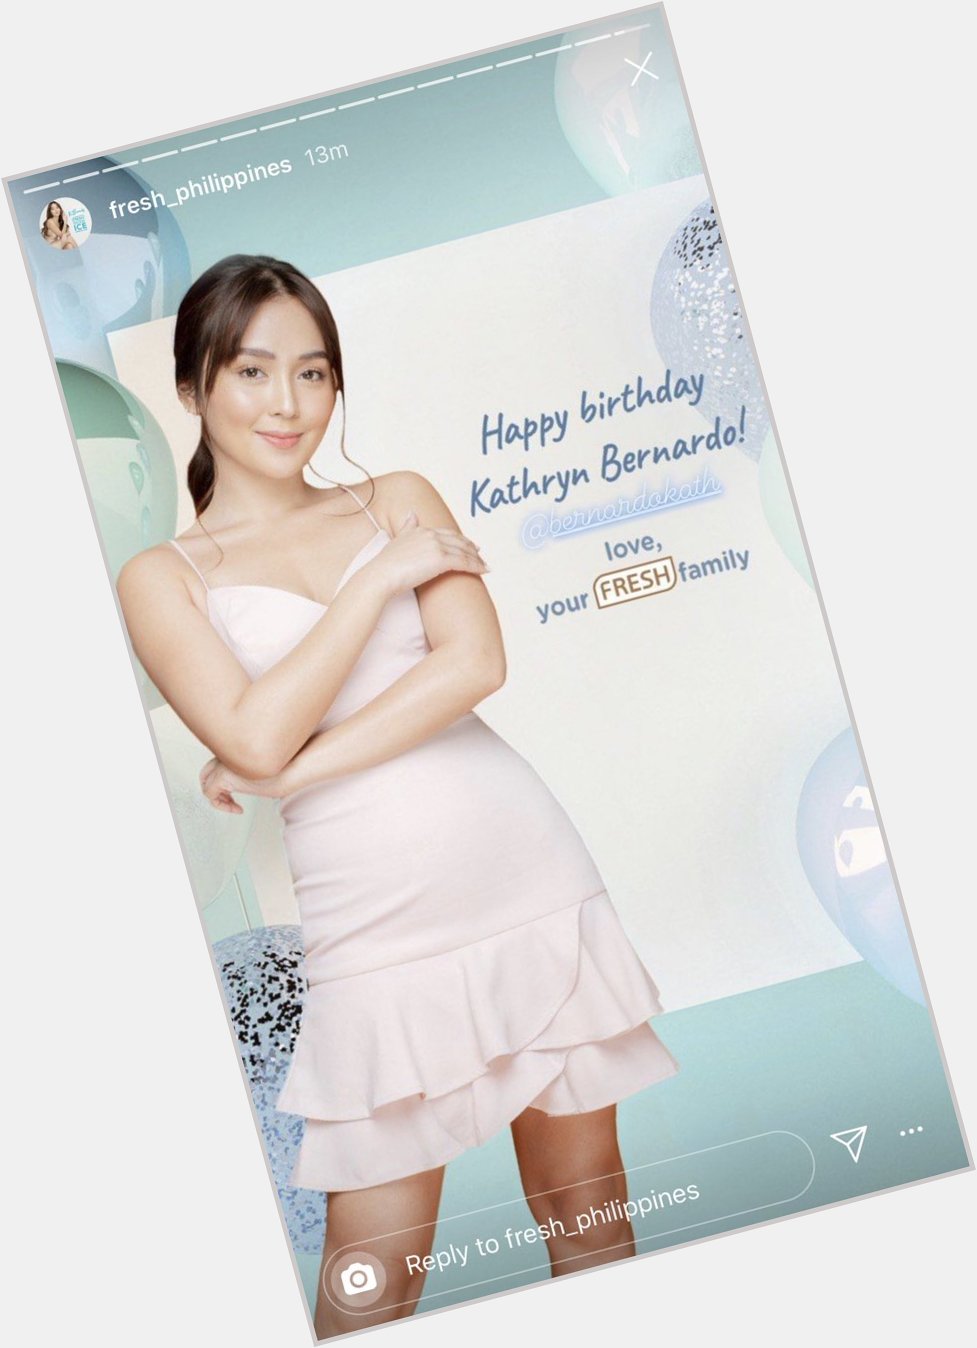  Happy birthday Kathryn Bernardo! -Fresh Philippines 